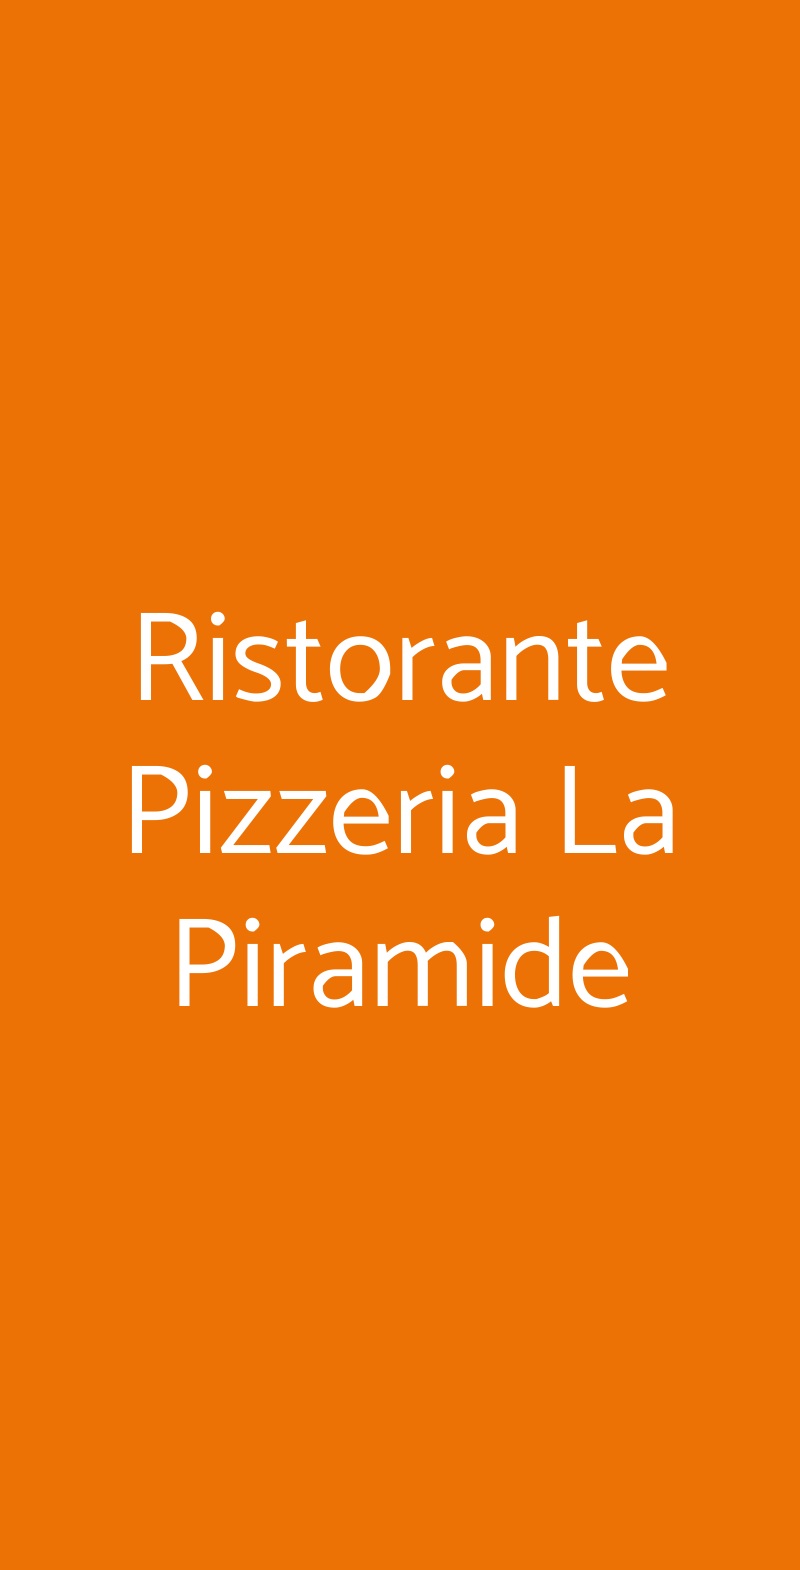 Ristorante Pizzeria La Piramide Guidonia Montecelio menù 1 pagina